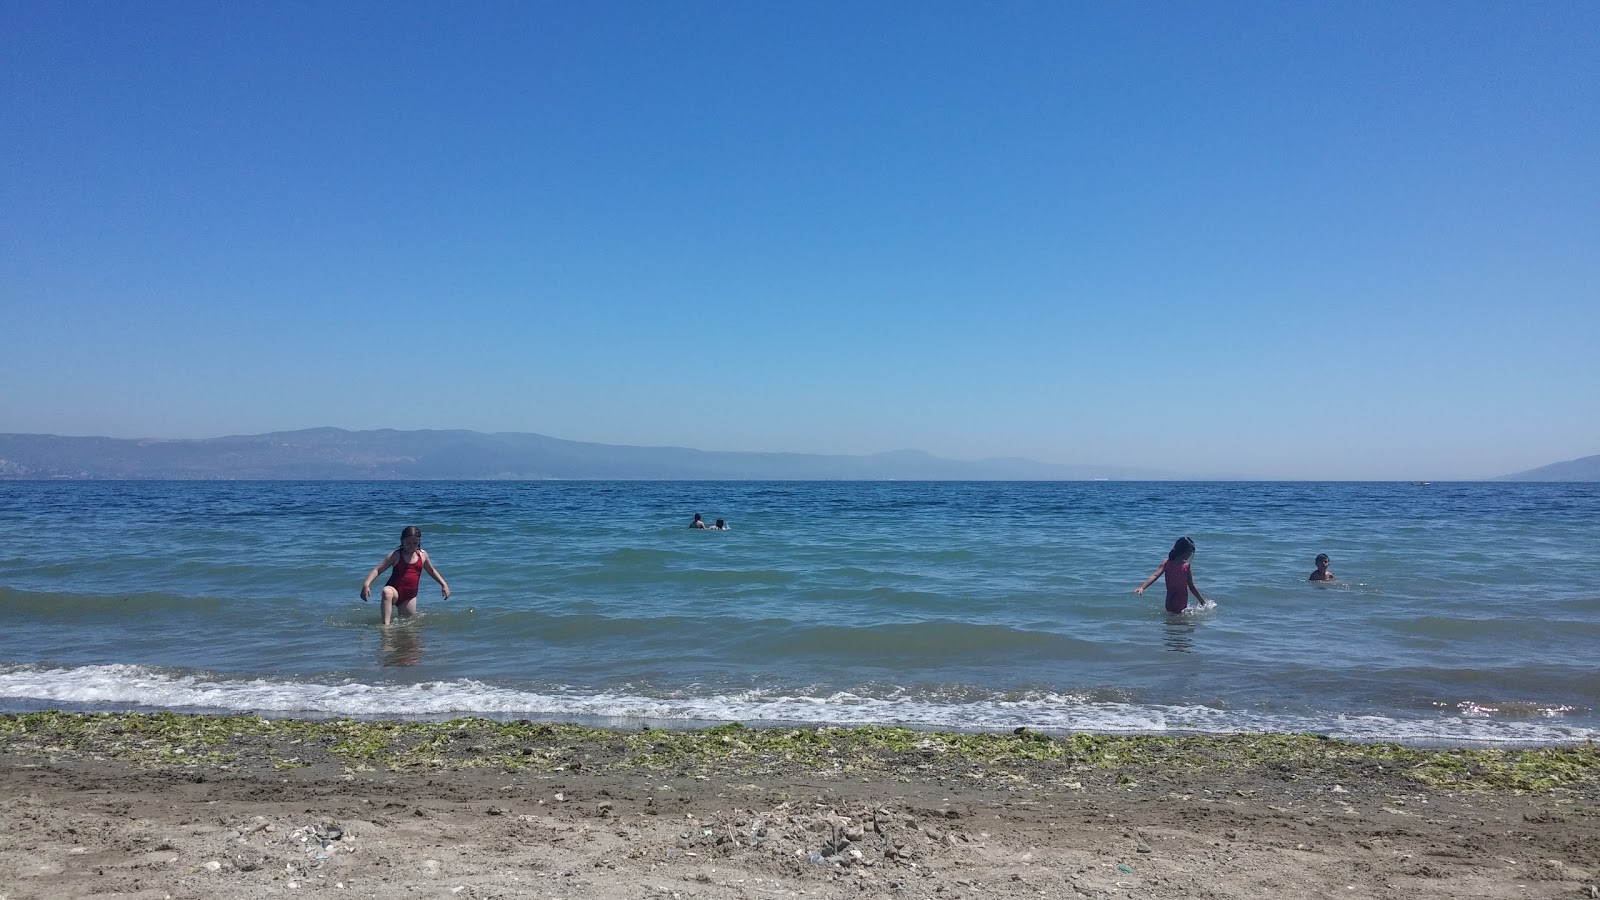 Foto af Kaytazdere beach - populært sted blandt afslapningskendere